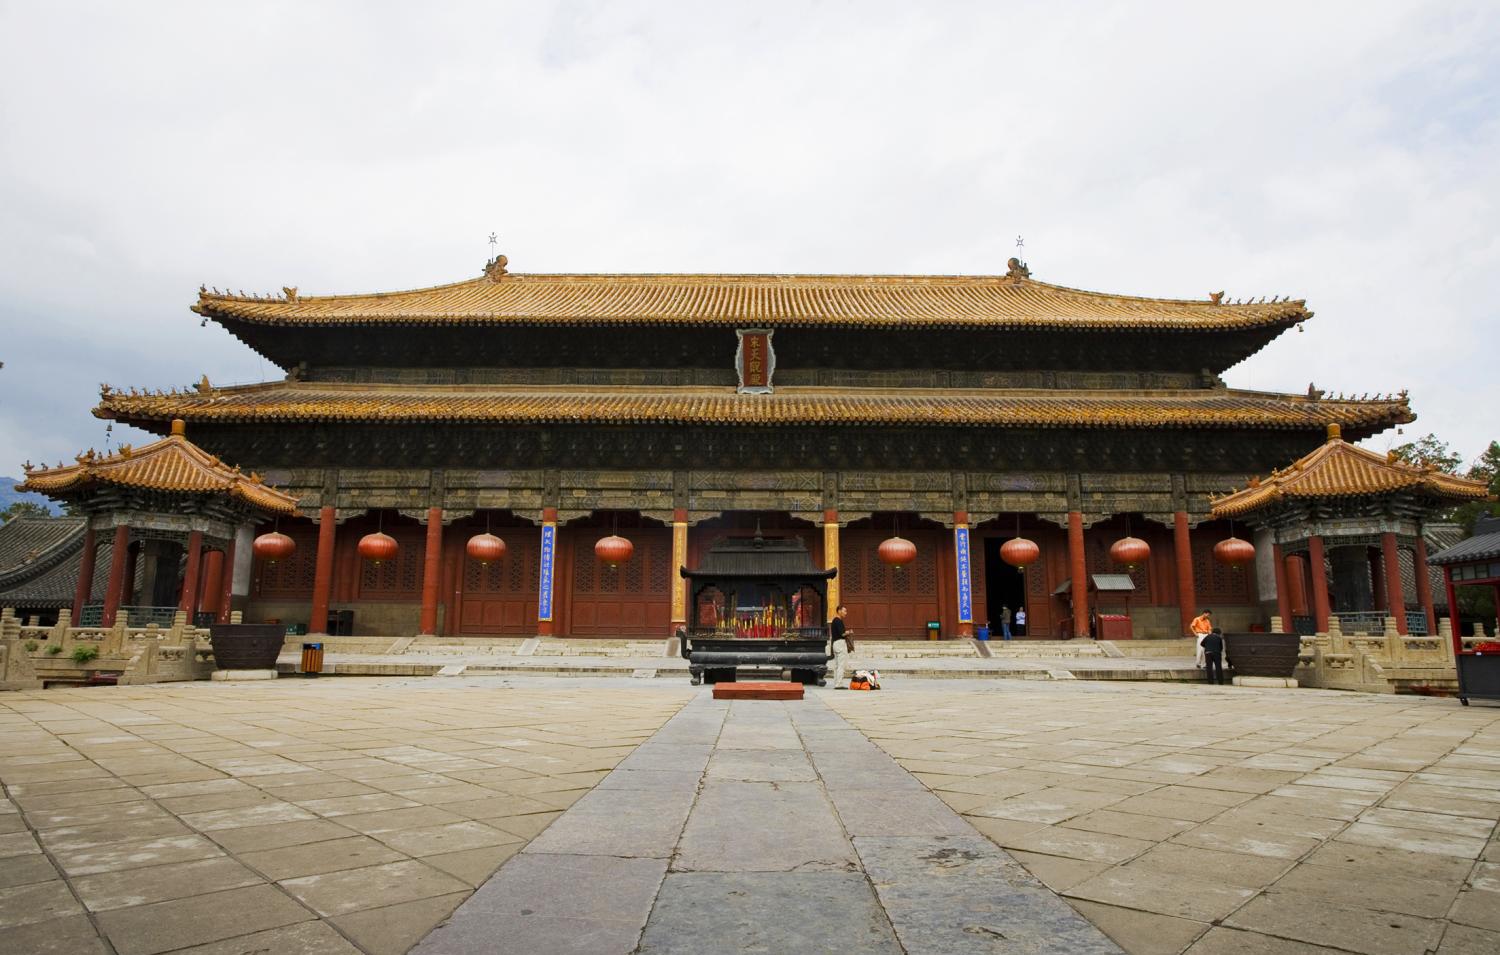 中国四大古建筑群, 中国最古老建筑聚集地, 你想参观哪一个?